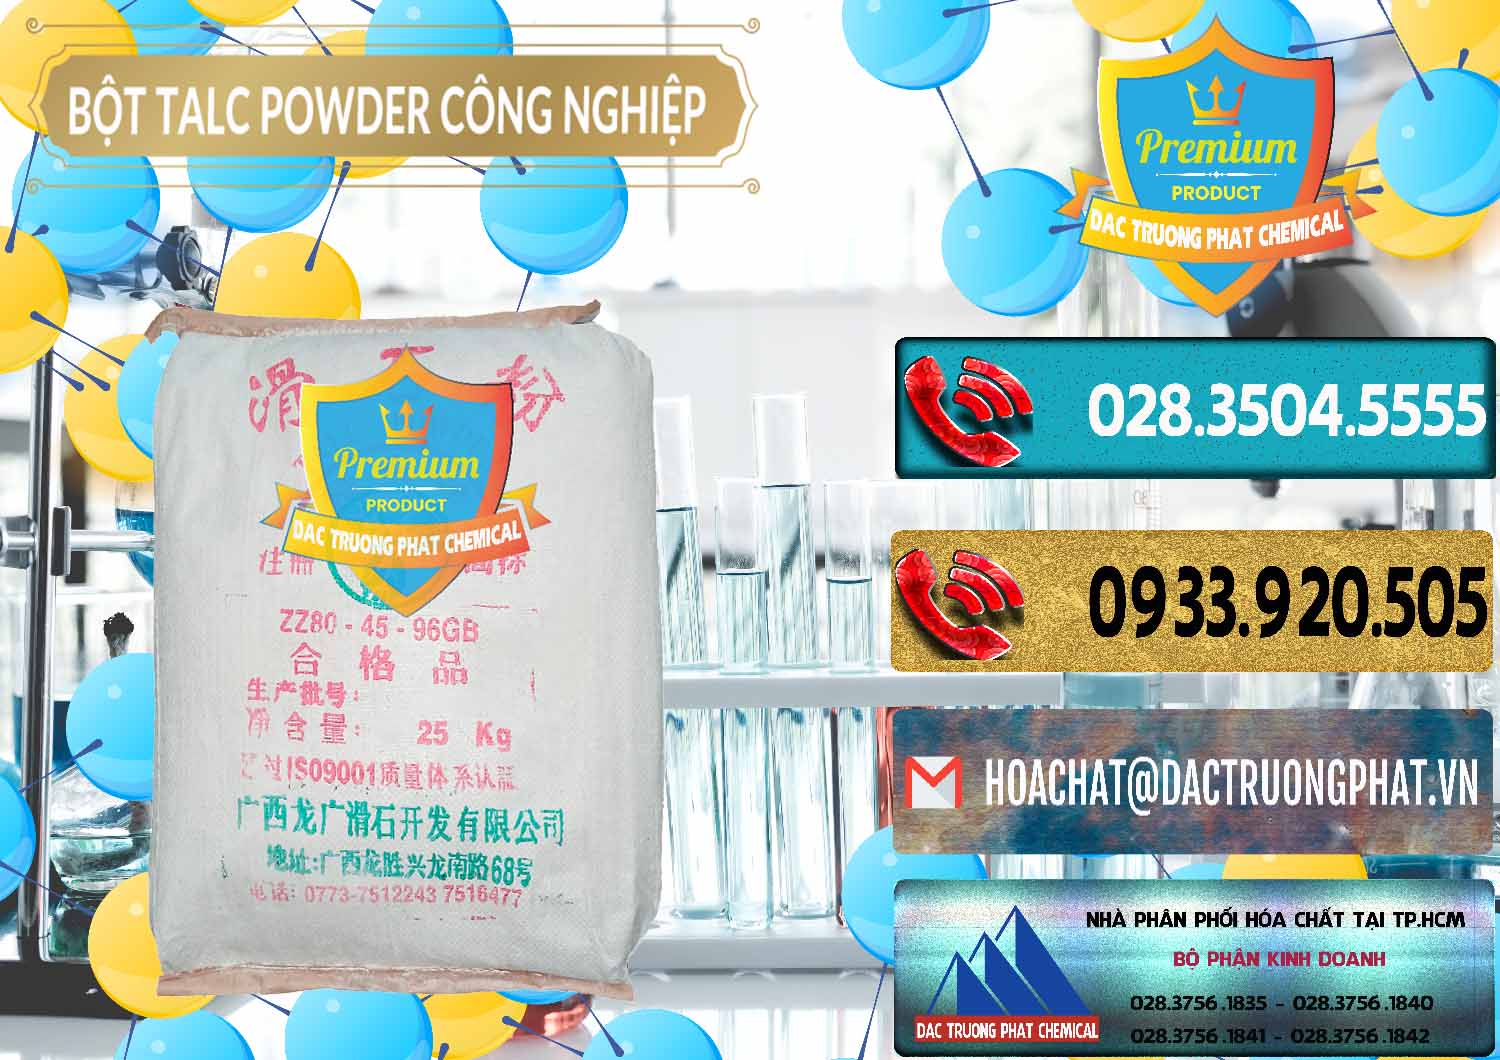 Nơi chuyên bán và phân phối Bột Talc Powder Công Nghiệp Trung Quốc China - 0037 - Đơn vị chuyên phân phối - nhập khẩu hóa chất tại TP.HCM - hoachatdetnhuom.com